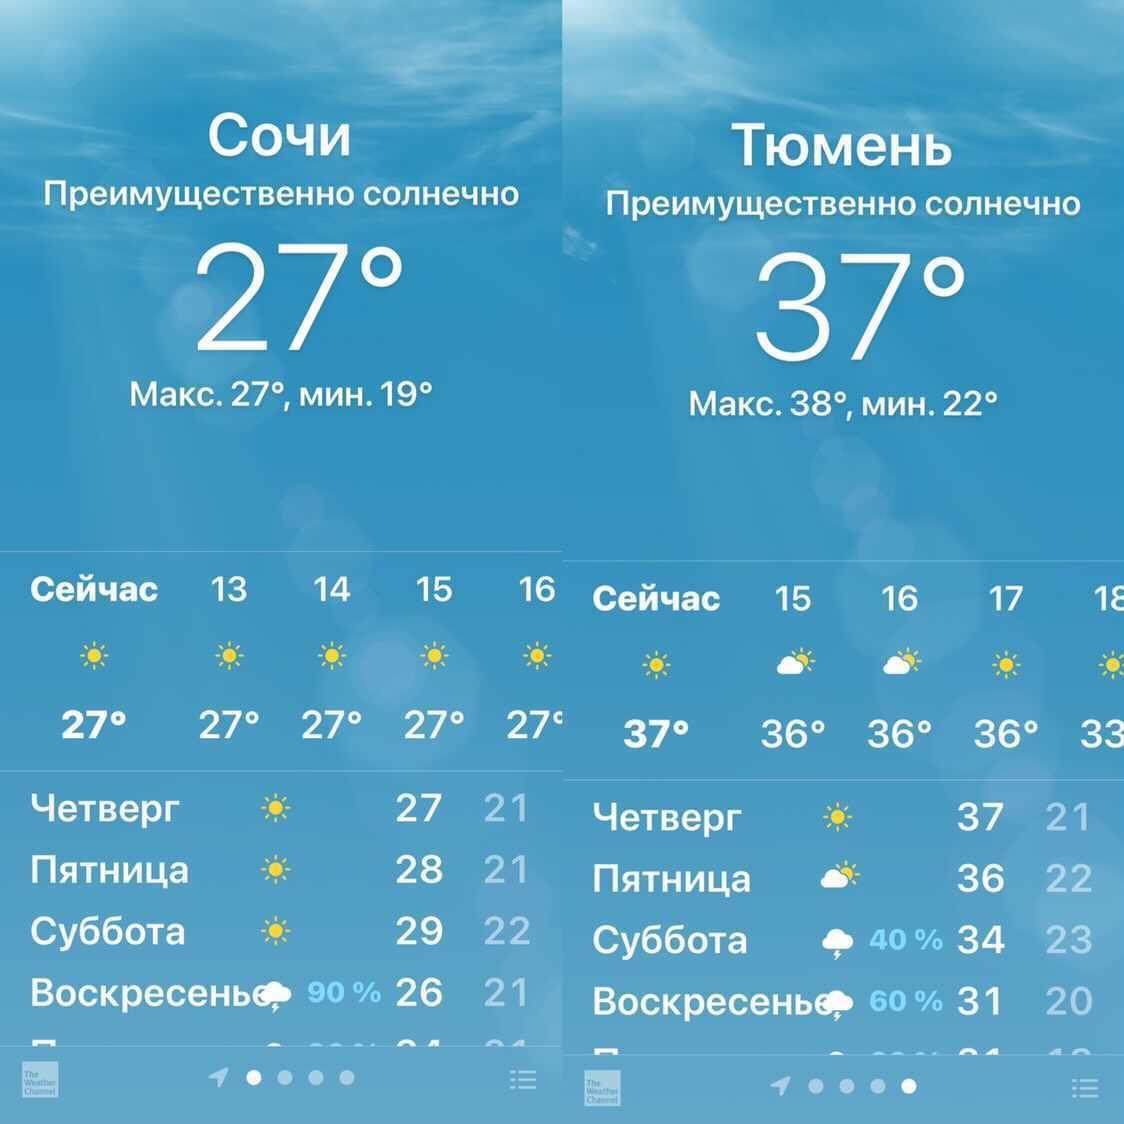 В Тюмени этим летом значительно теплее, чем в Сочи